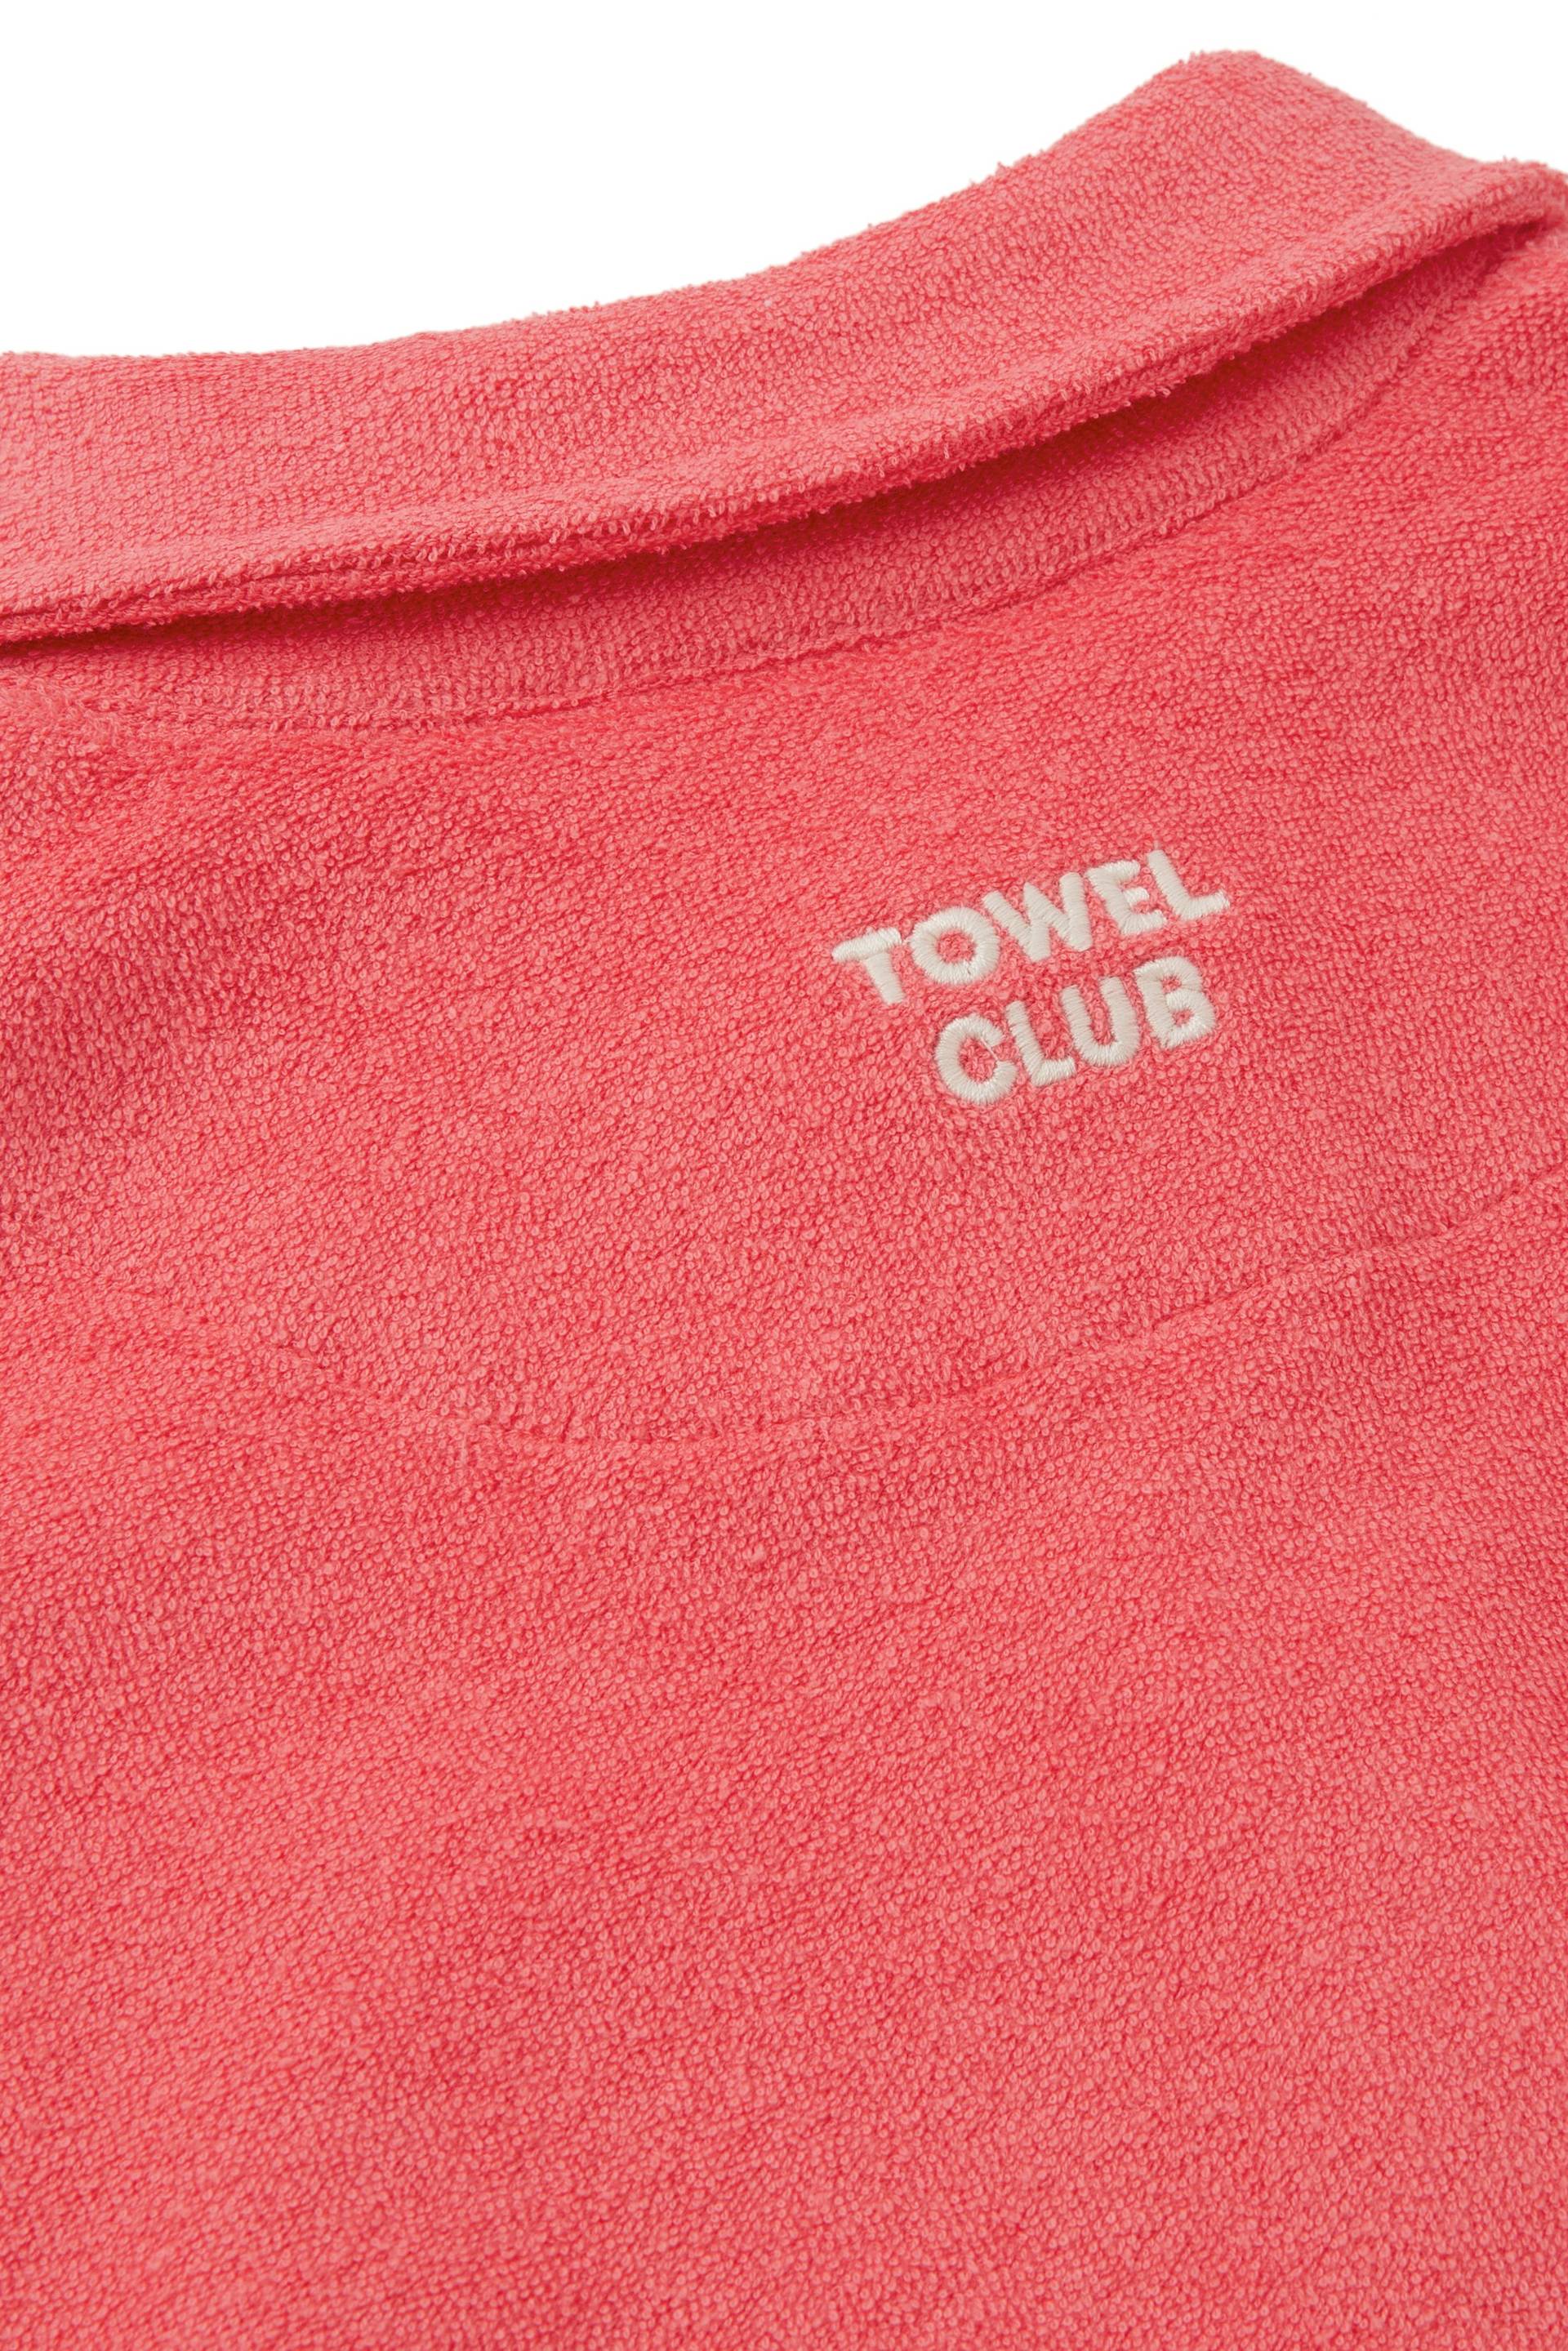 Towel Club Towel Club Piquet Tshirt Coral - 4